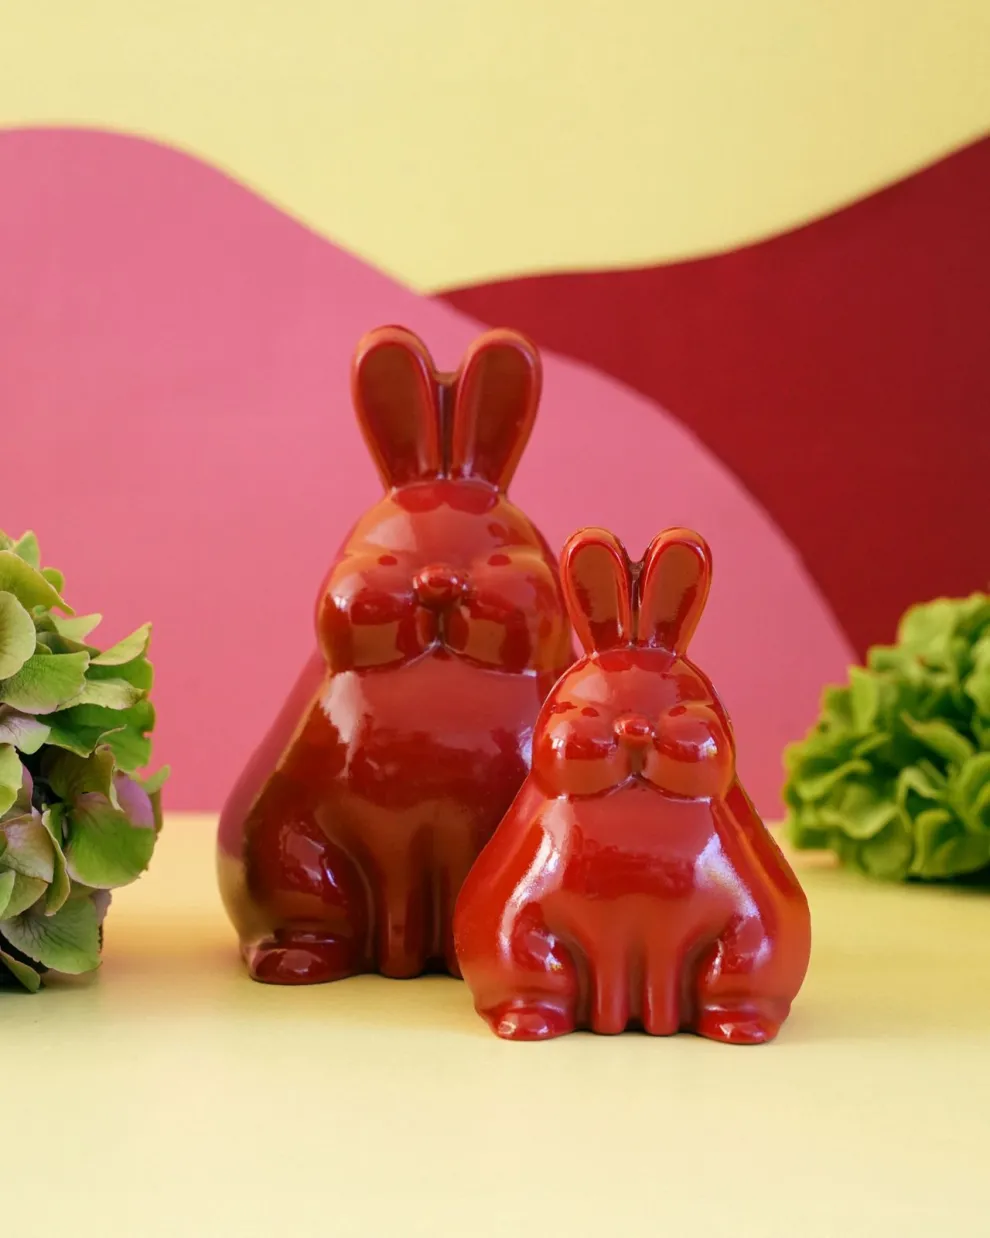 Los conejos de chocolate de Betular vienen en dos tamaños: uno chico de 100 g y otro mediano de 320 g.o